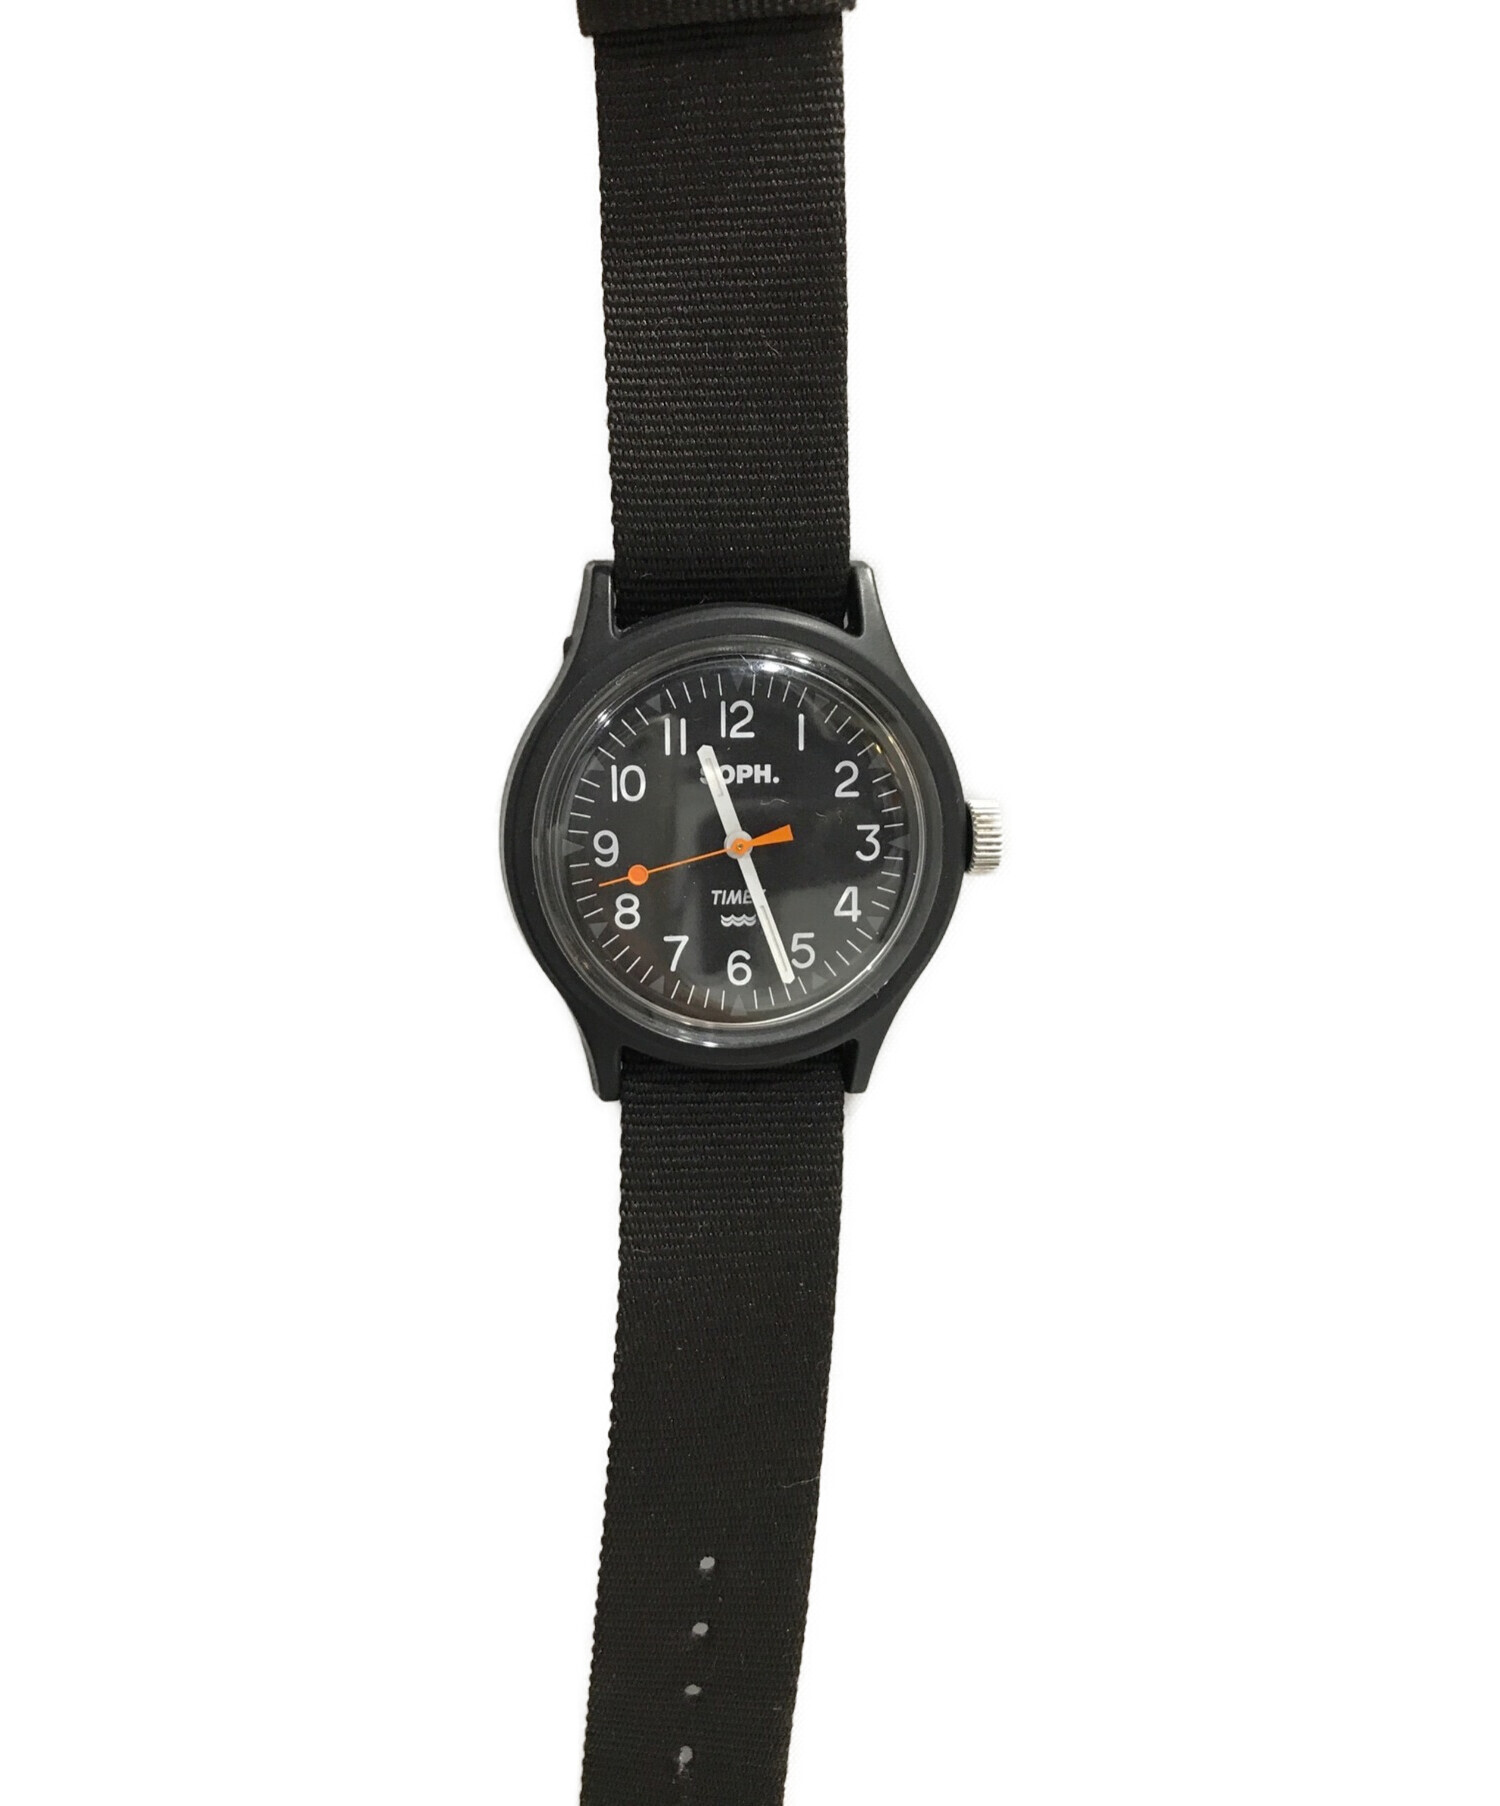 国内販売なし END x SOPH x Timex MK1 Watch | camillevieraservices.com